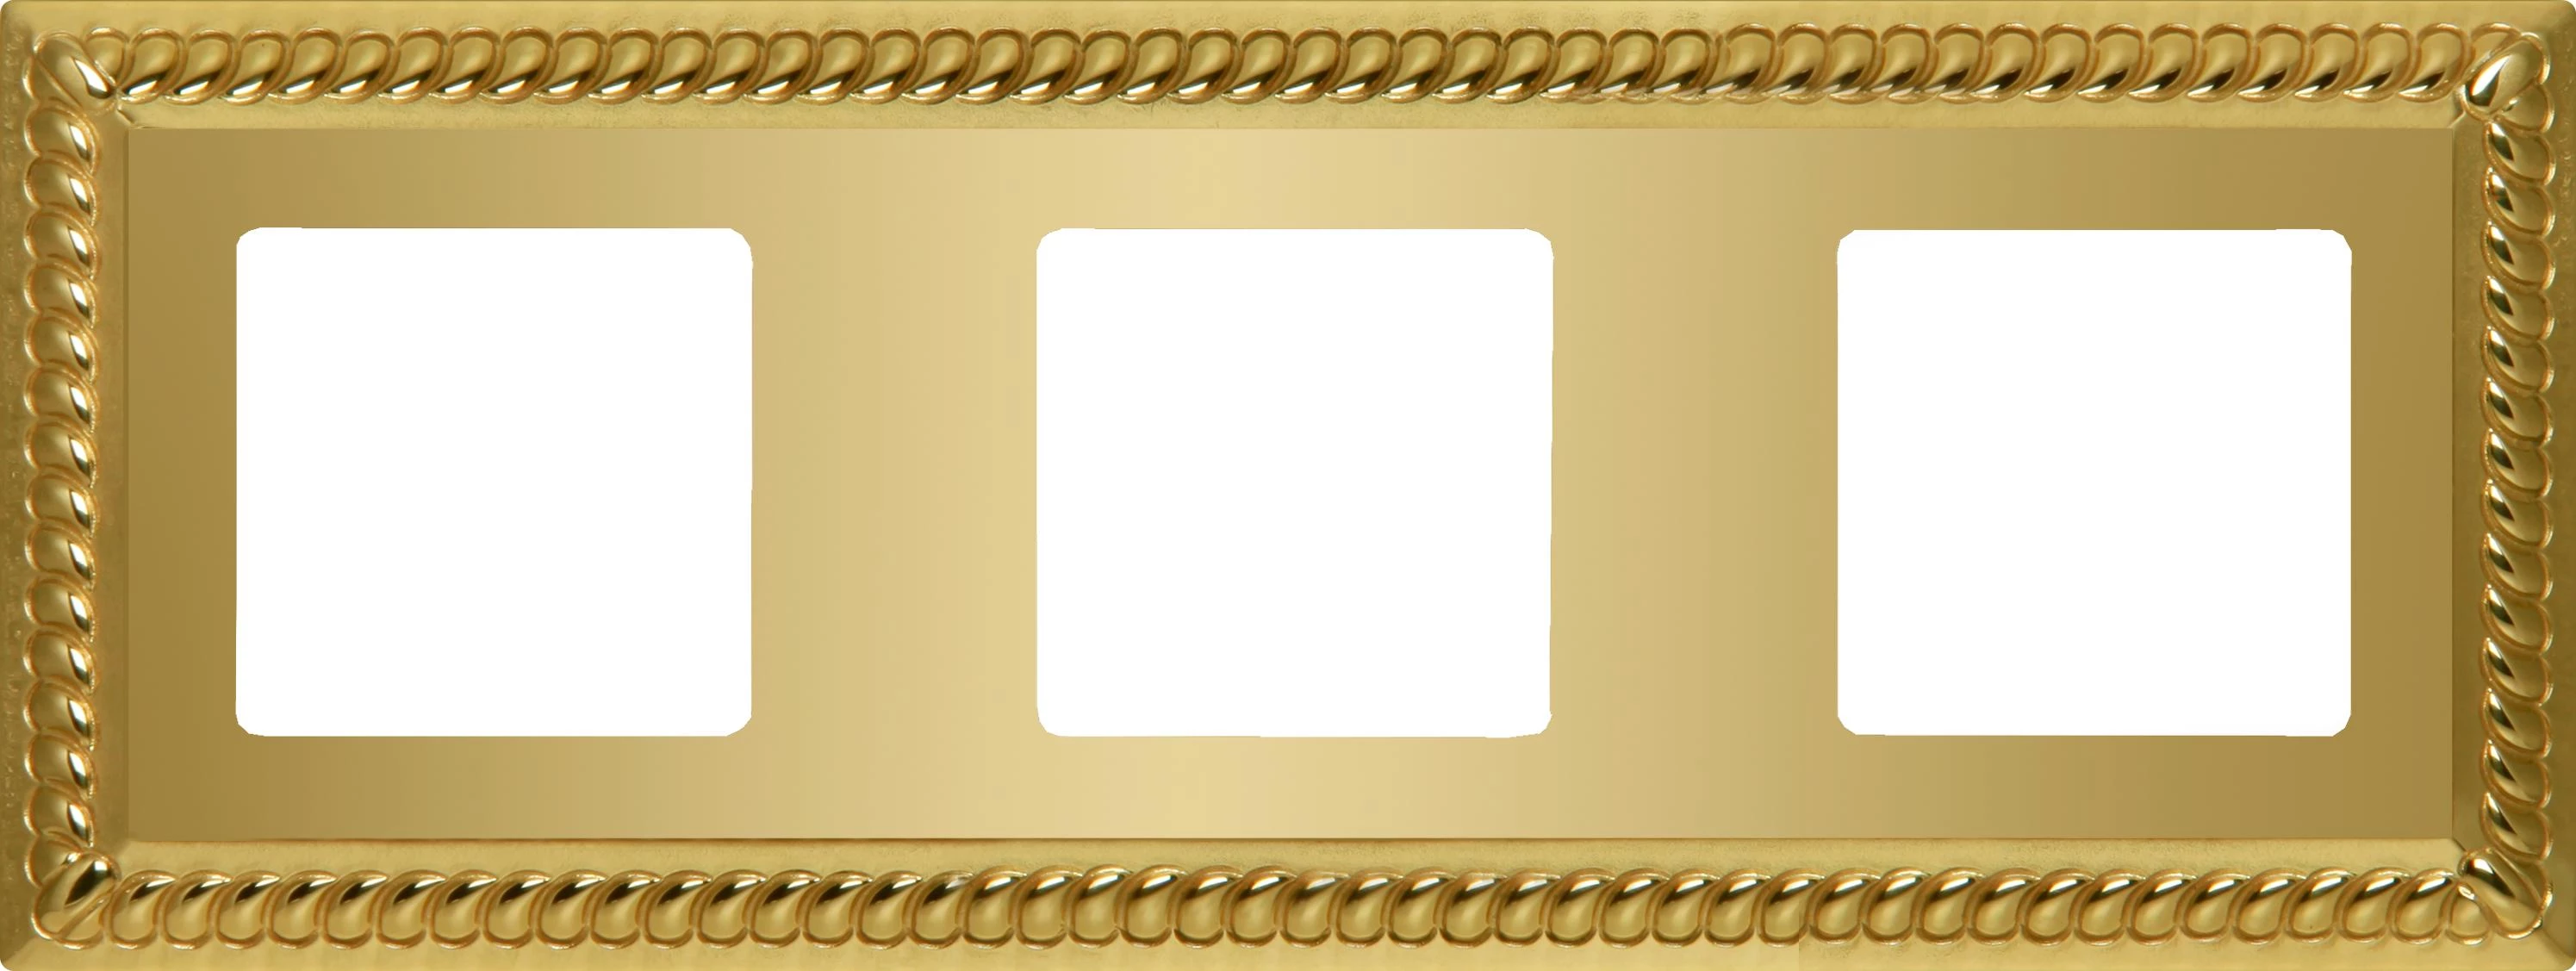  артикул FD01233OB название Рамка 3-ая (тройная), цвет Светлое золото, Sevilla, Fede